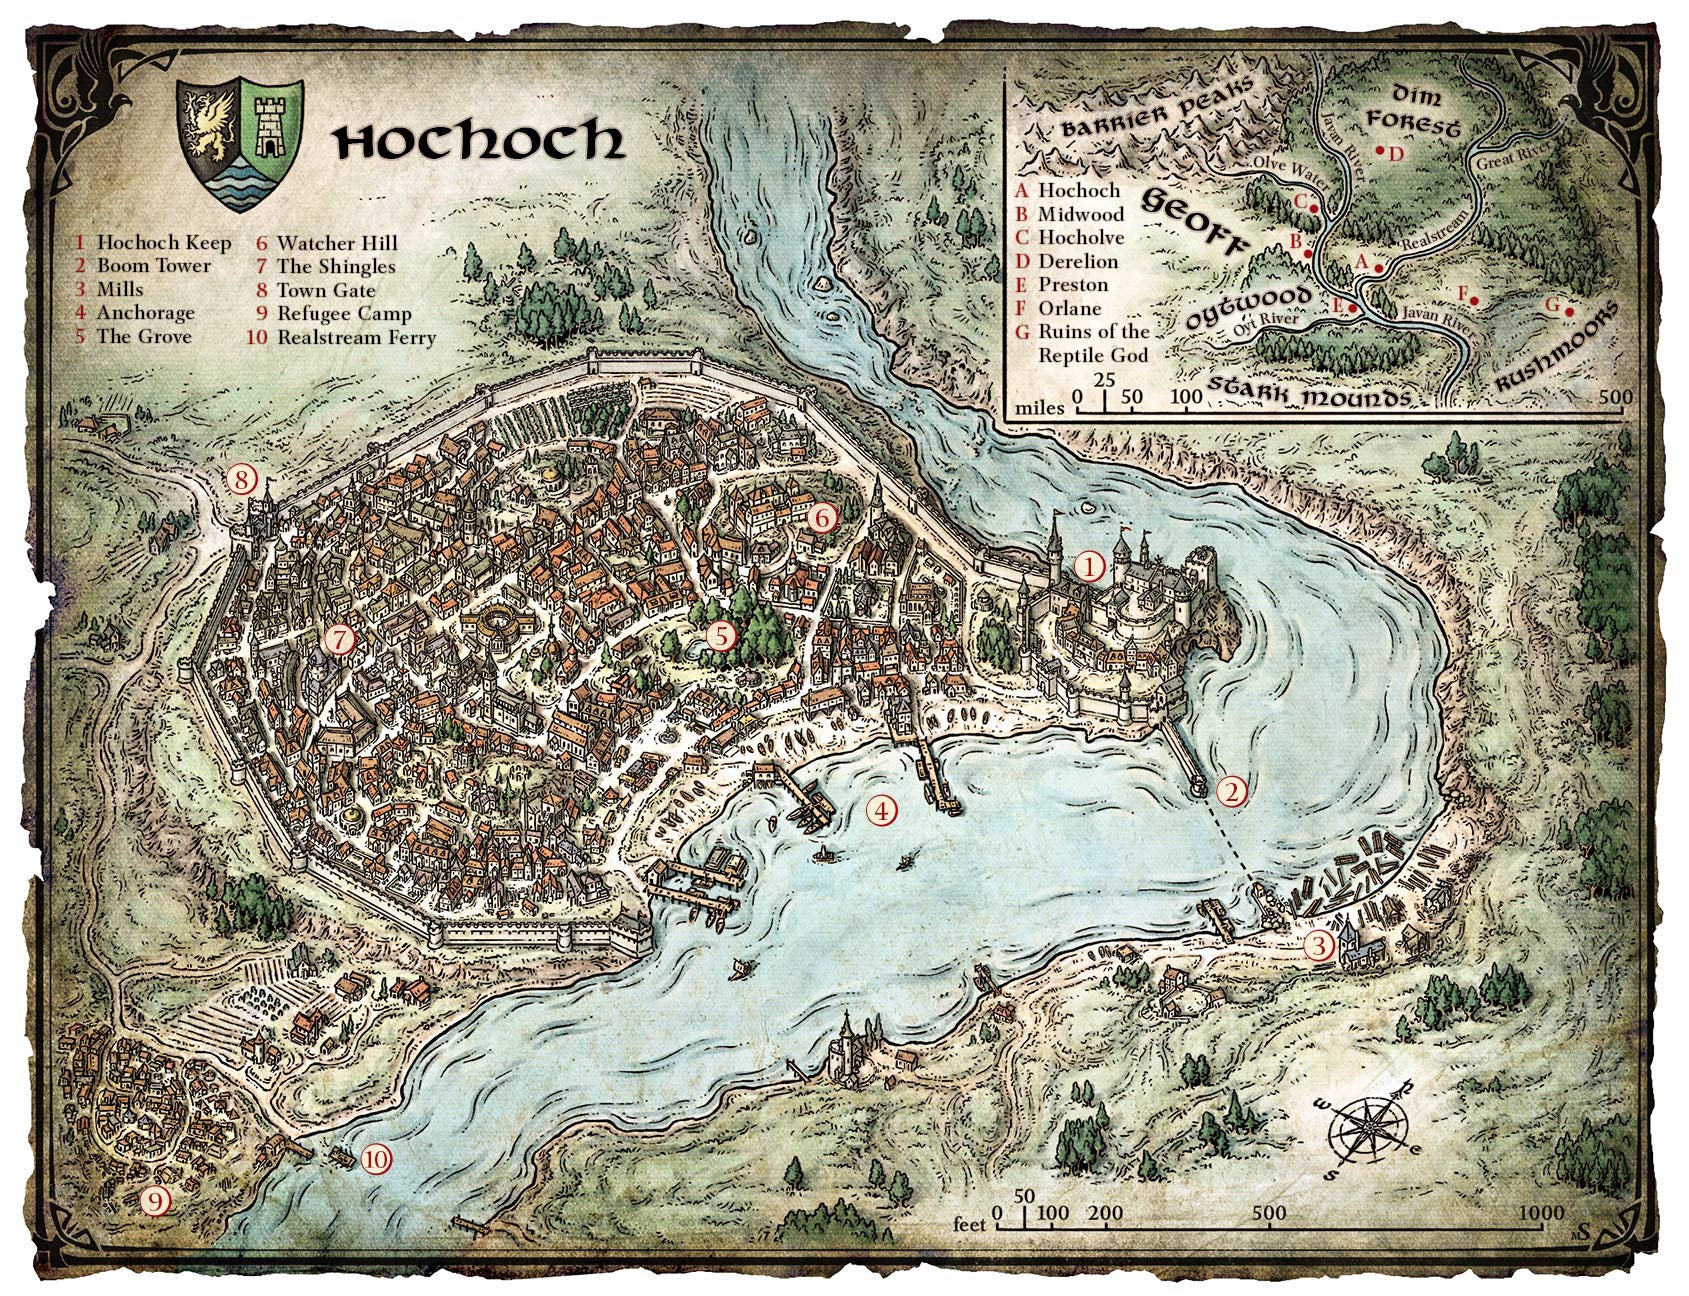 Une carte d'une ville fantastique située sur un méandre de la rivière. C'est une ville de style médiéval, à l'intérieur des murs d'un château.